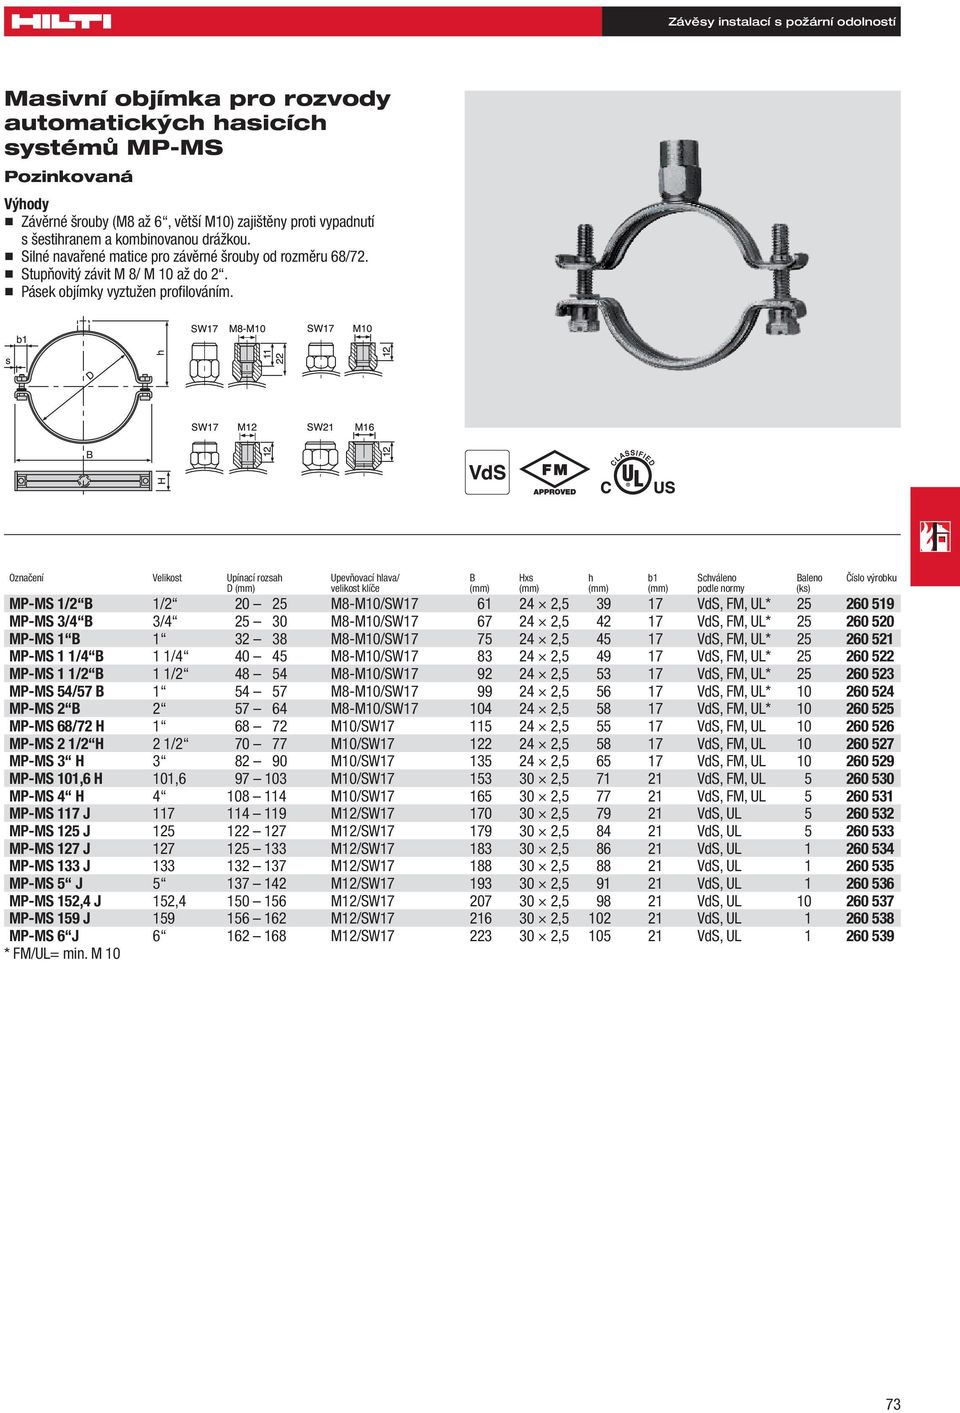 Označení Velikost Upínací rozsah Upevňovací hlava/ B Hxs h b1 Schváleno Baleno Číslo výrobku D (mm) velikost klíče (mm) (mm) (mm) (mm) podle normy (ks) MP-MS 1/2 B 1/2 20 25 M8-M10/SW17 61 24 2,5 39